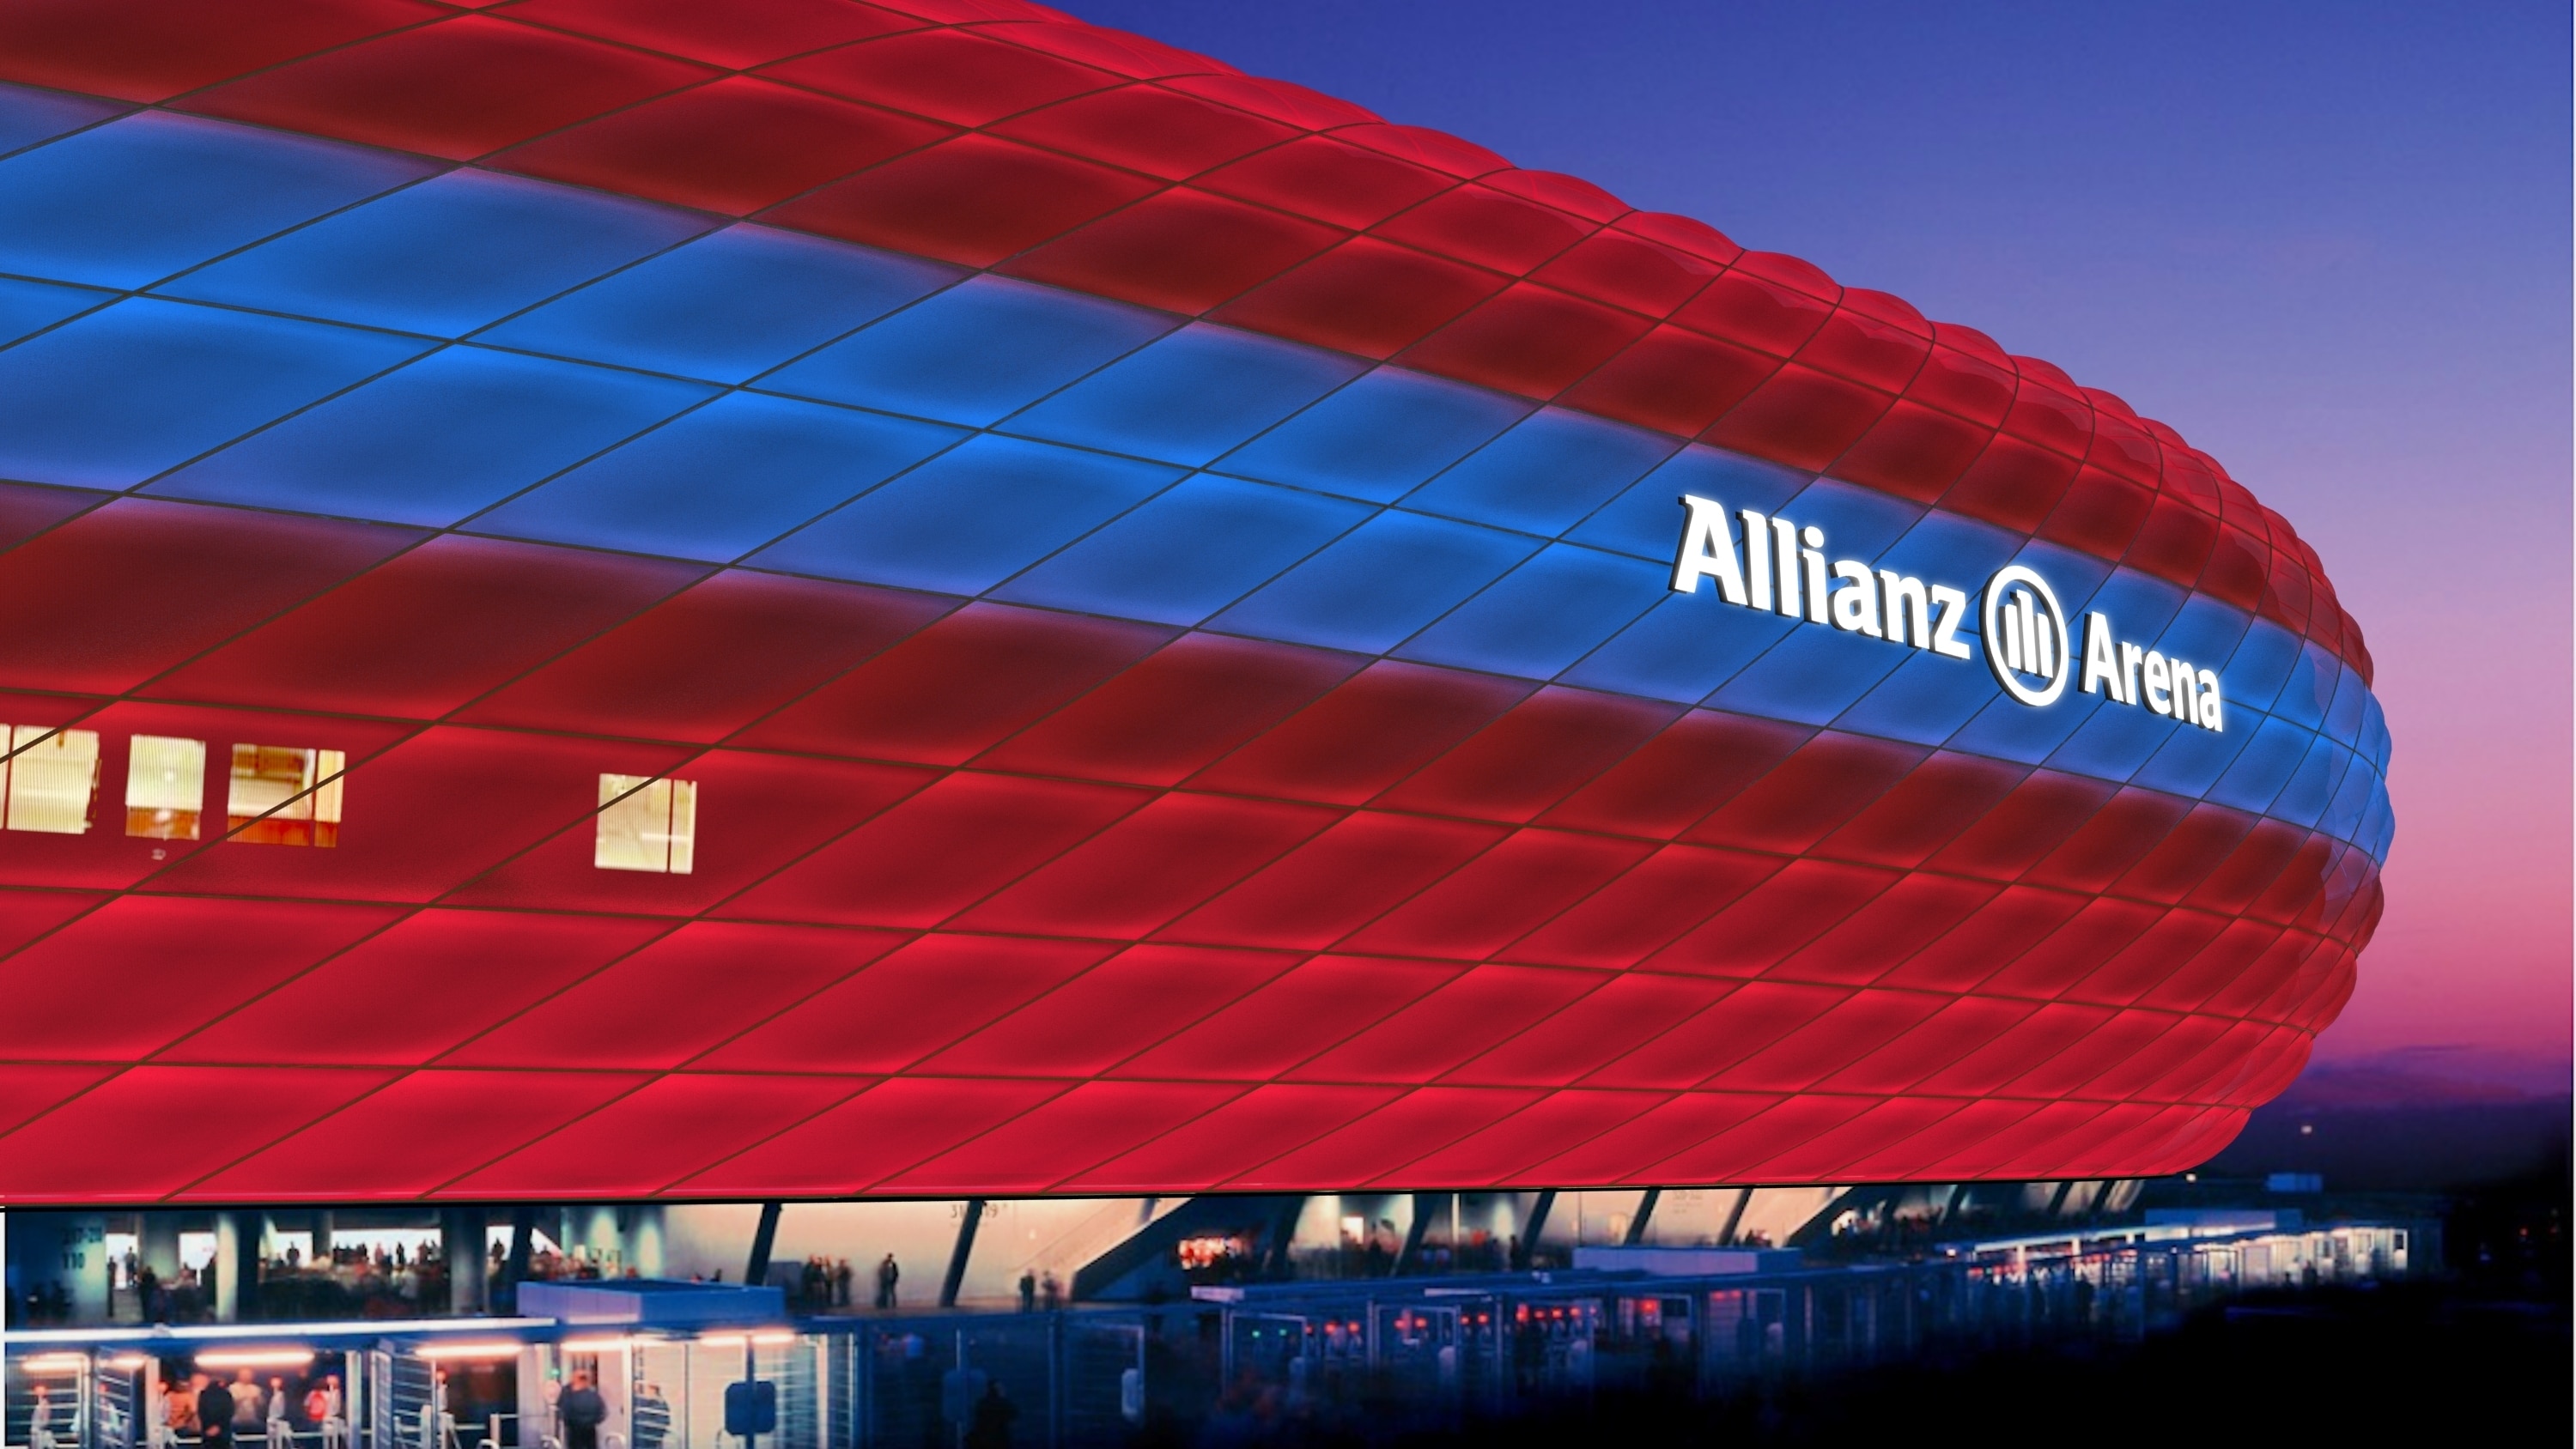 フィリップス Fcバイエルン ミュンヘンとホームスタジアムであるアリアンツ アレーナの公式照明パートナーに Philips Lighting